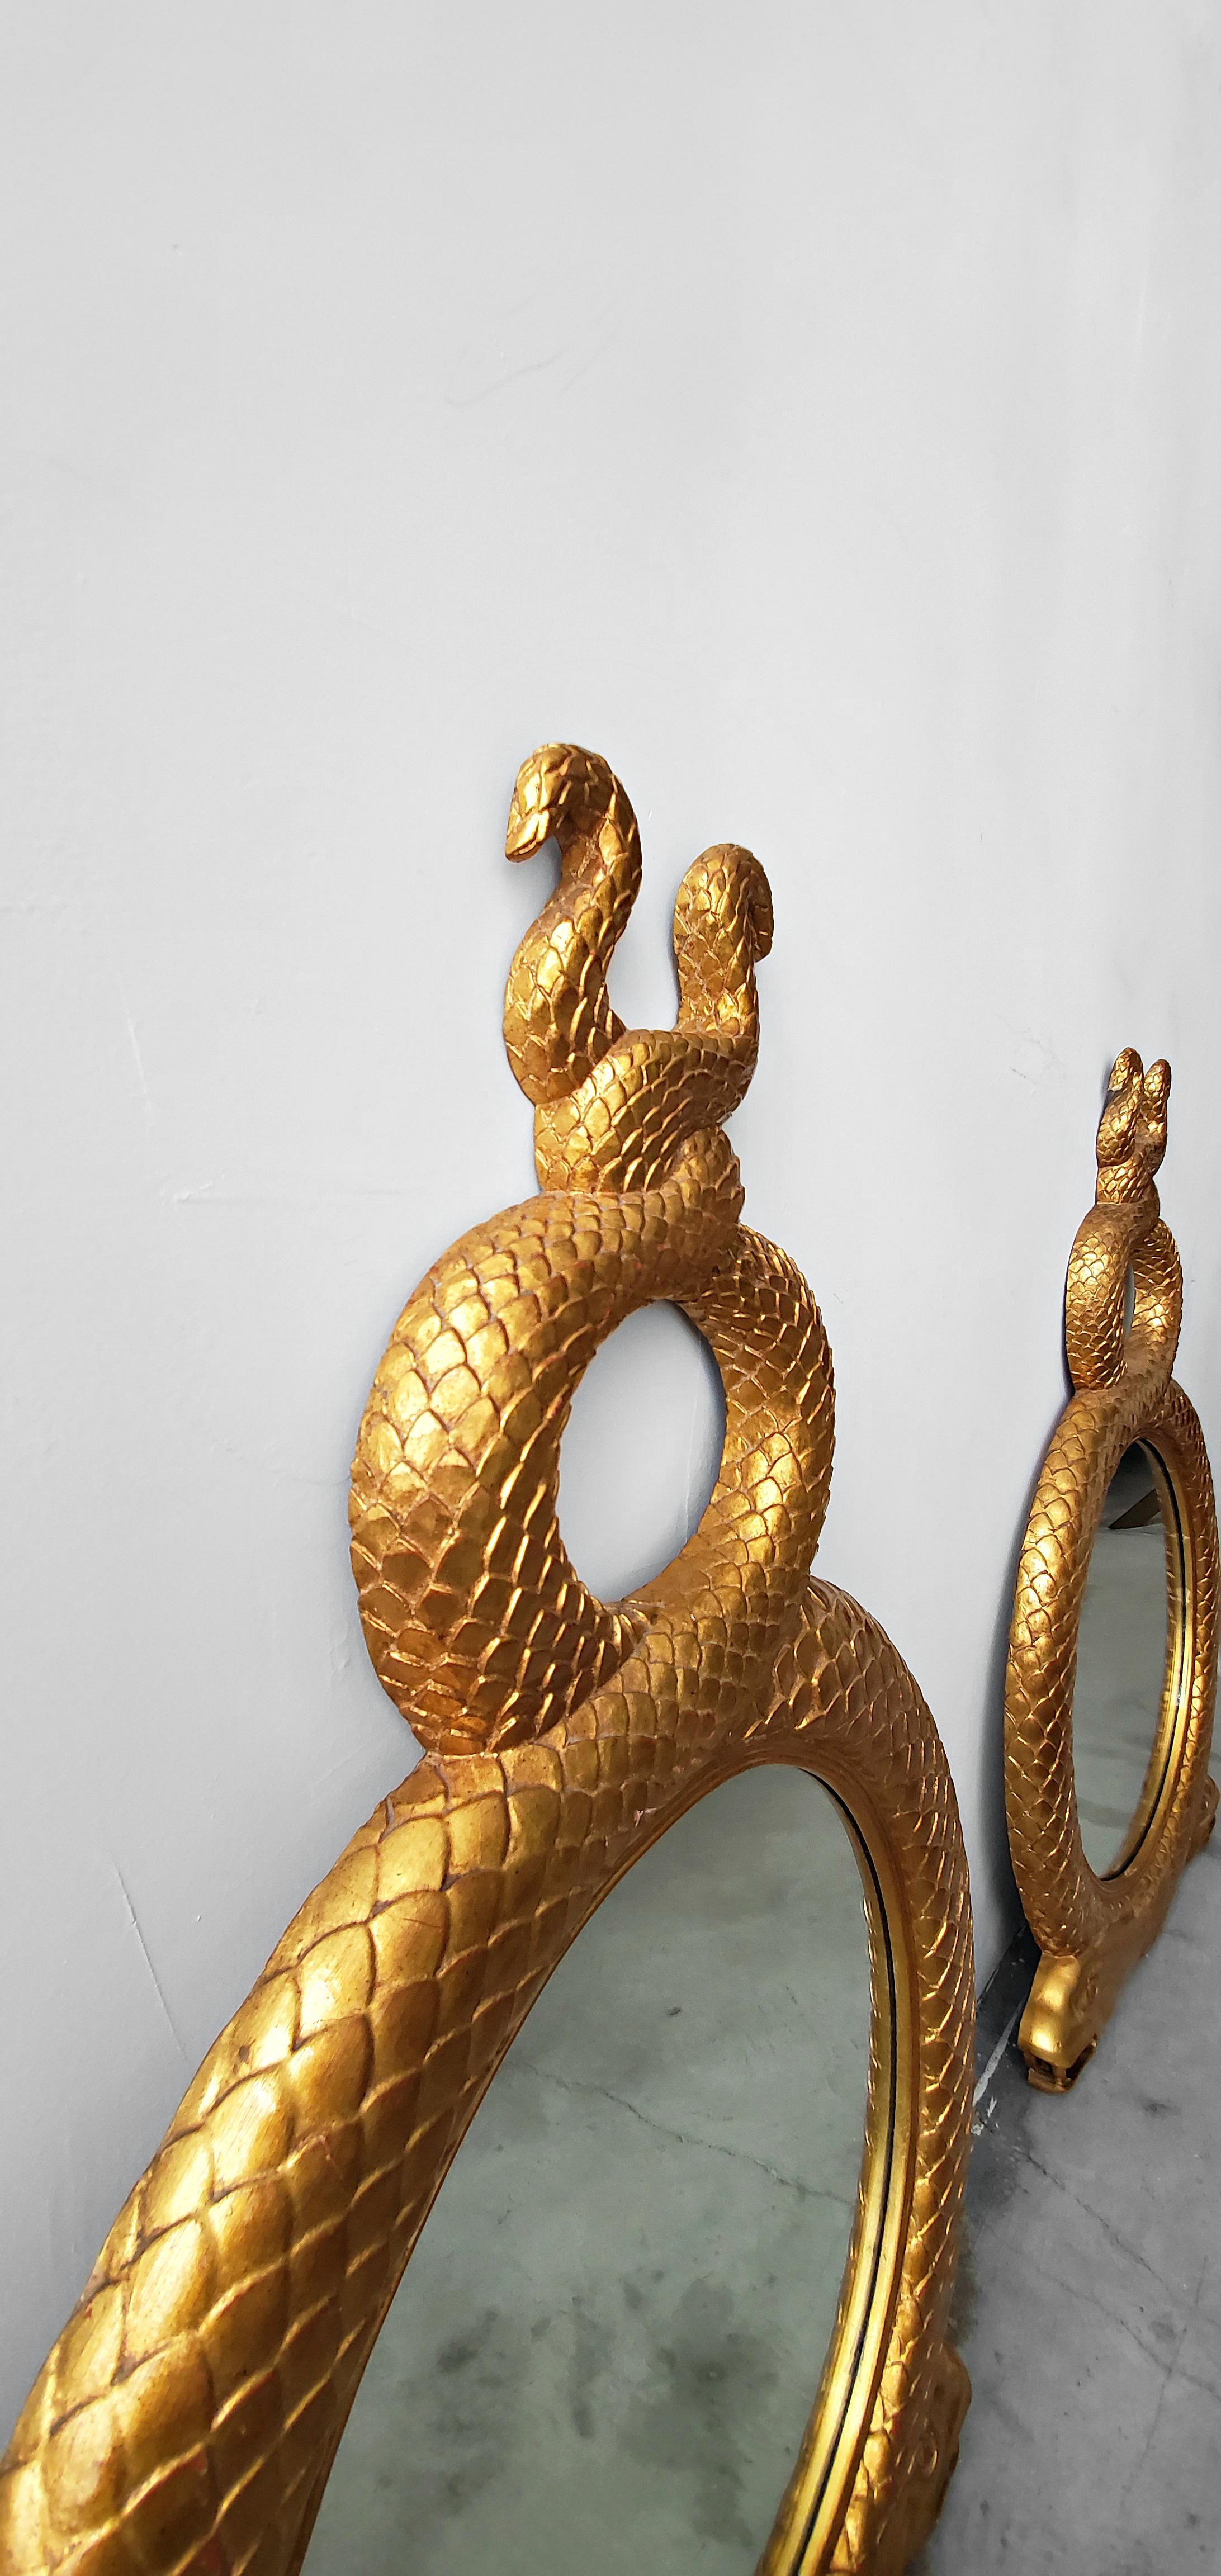 serpent mirror